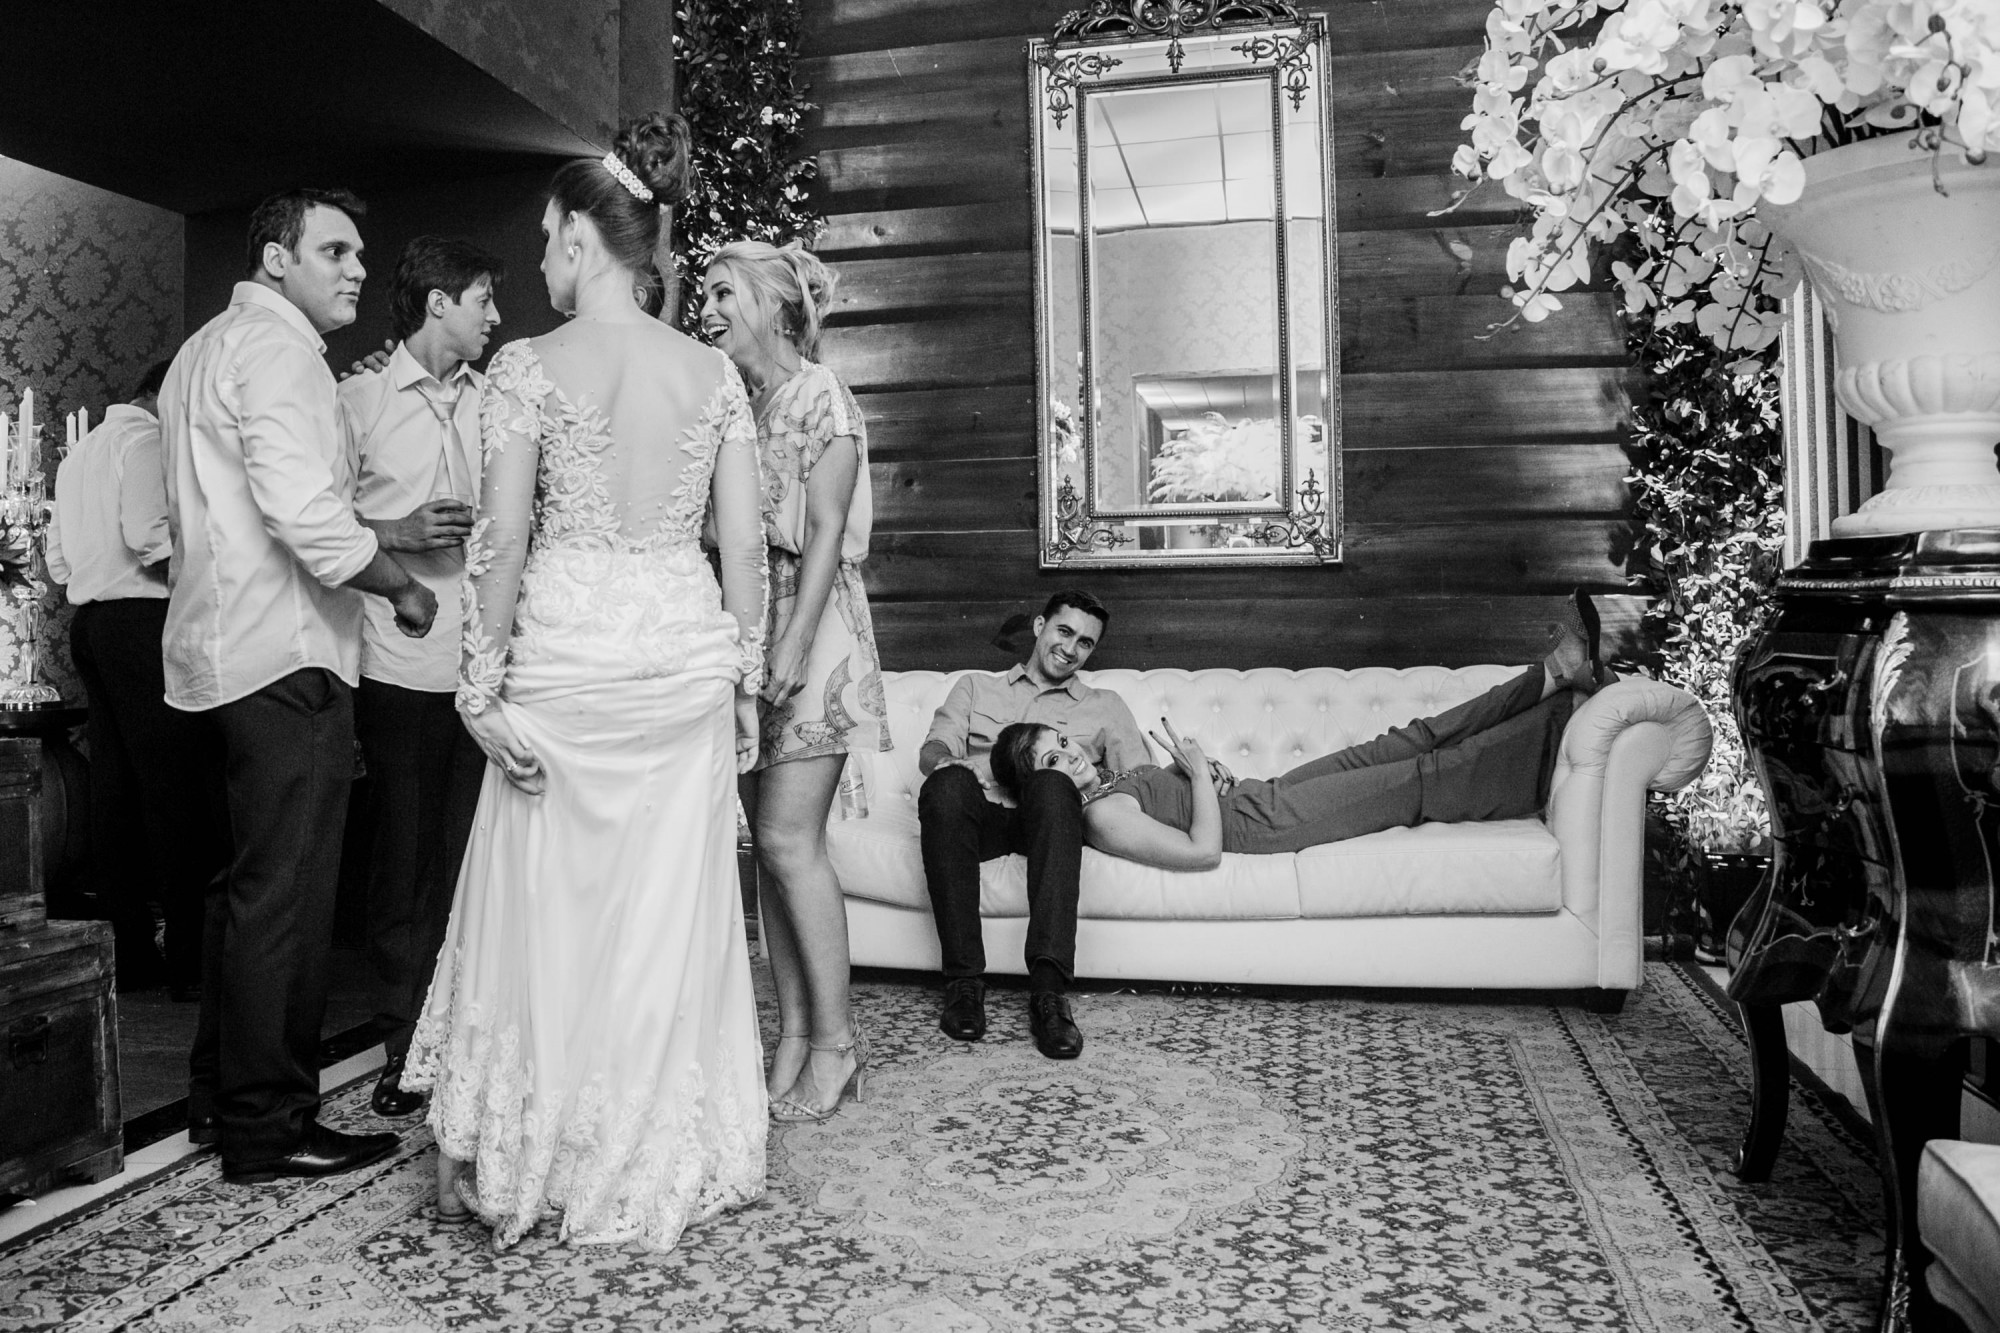 Casamento Anderson e Juliana Fioreli em Iporã Paraná - por Lorran Souza e Léia Sotile - Fotografos de casamentos - JA-5303